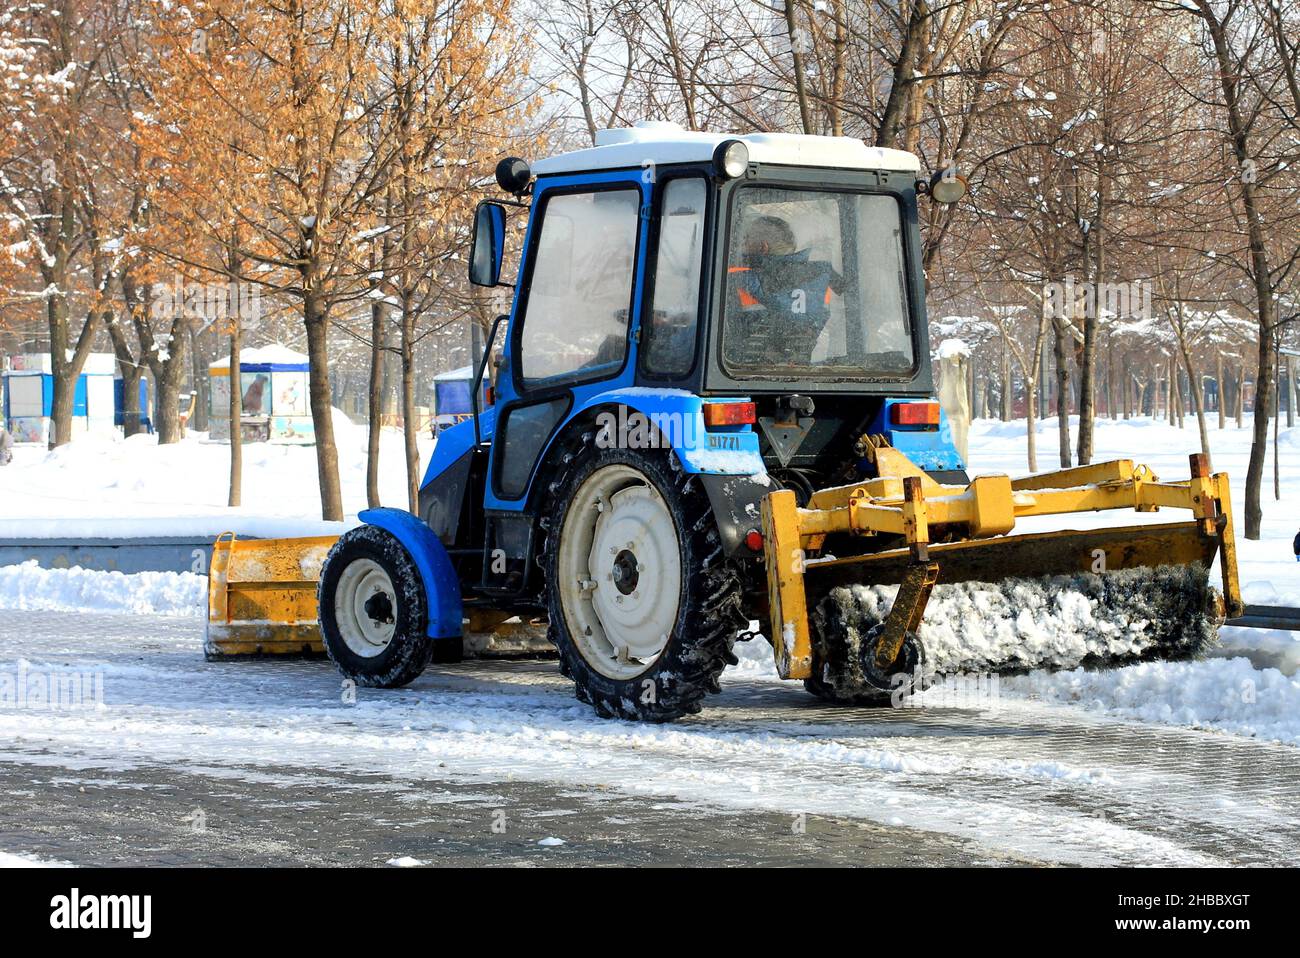 Nettoyage d'hiver des rues de la ville.Le tracteur enlève la neige fraîche d'une rue enneigée en hiver.Dnipro City, Dnepr, Ukraine Banque D'Images